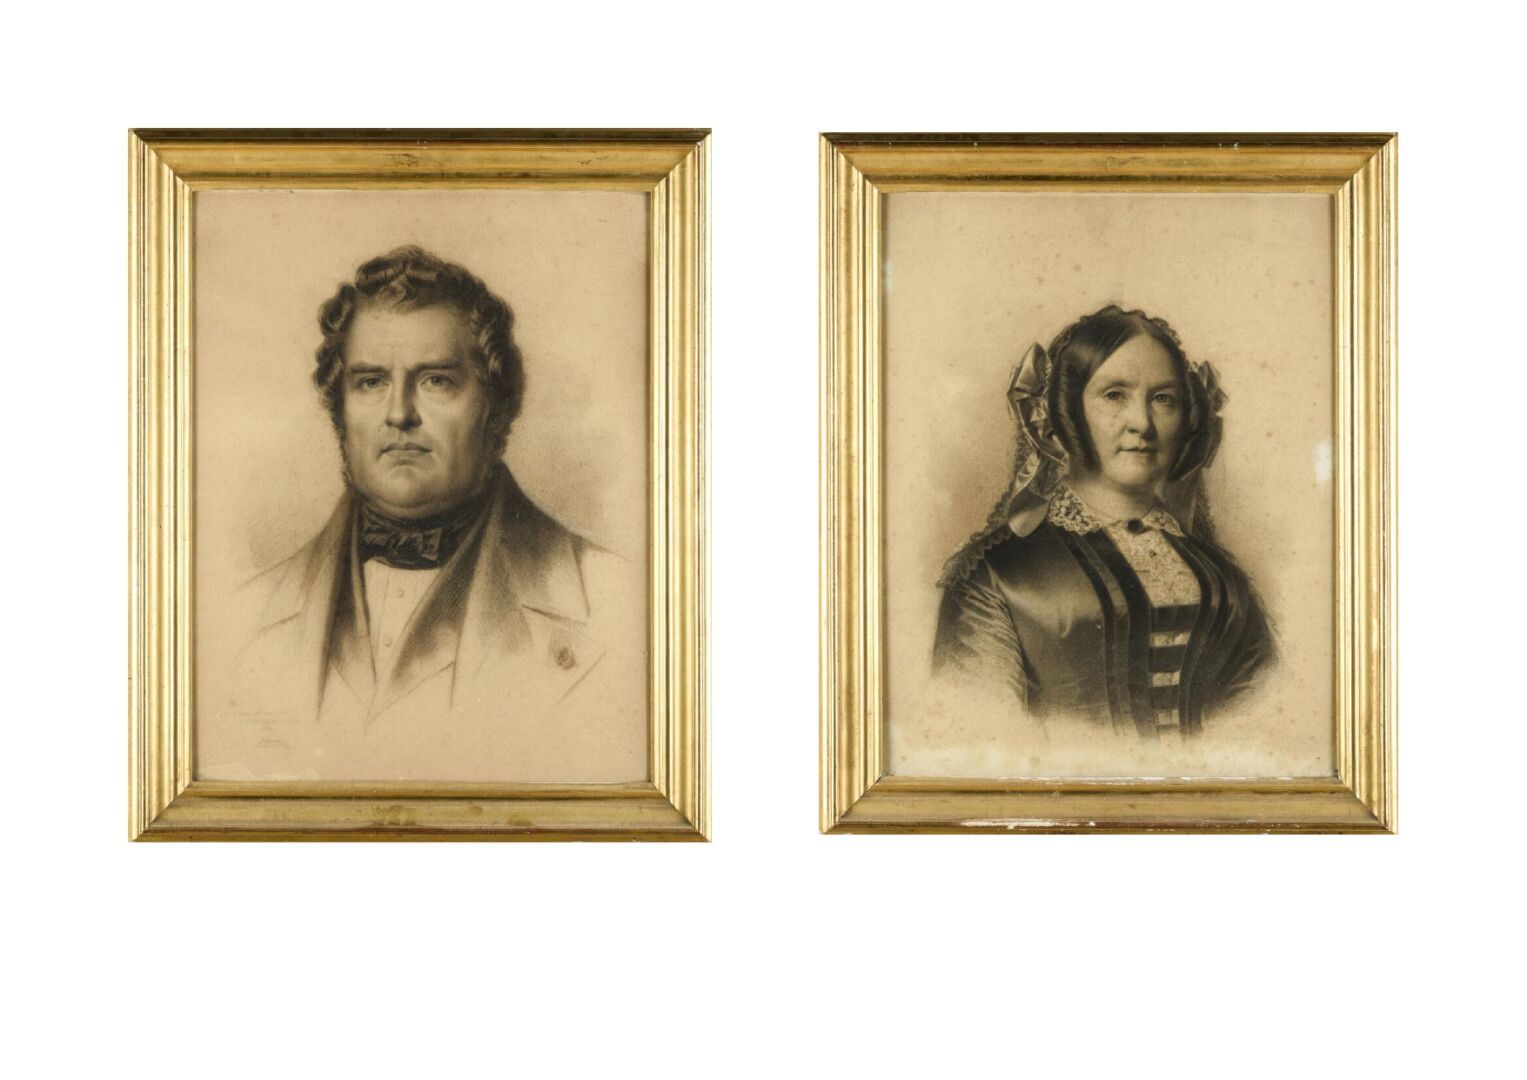 Null 皮埃尔-罗克-维纳隆 (1792-1872)
一个男人的画像和一个女人的画像
已签名并注明日期为1852年的图画
65 x 49 厘米